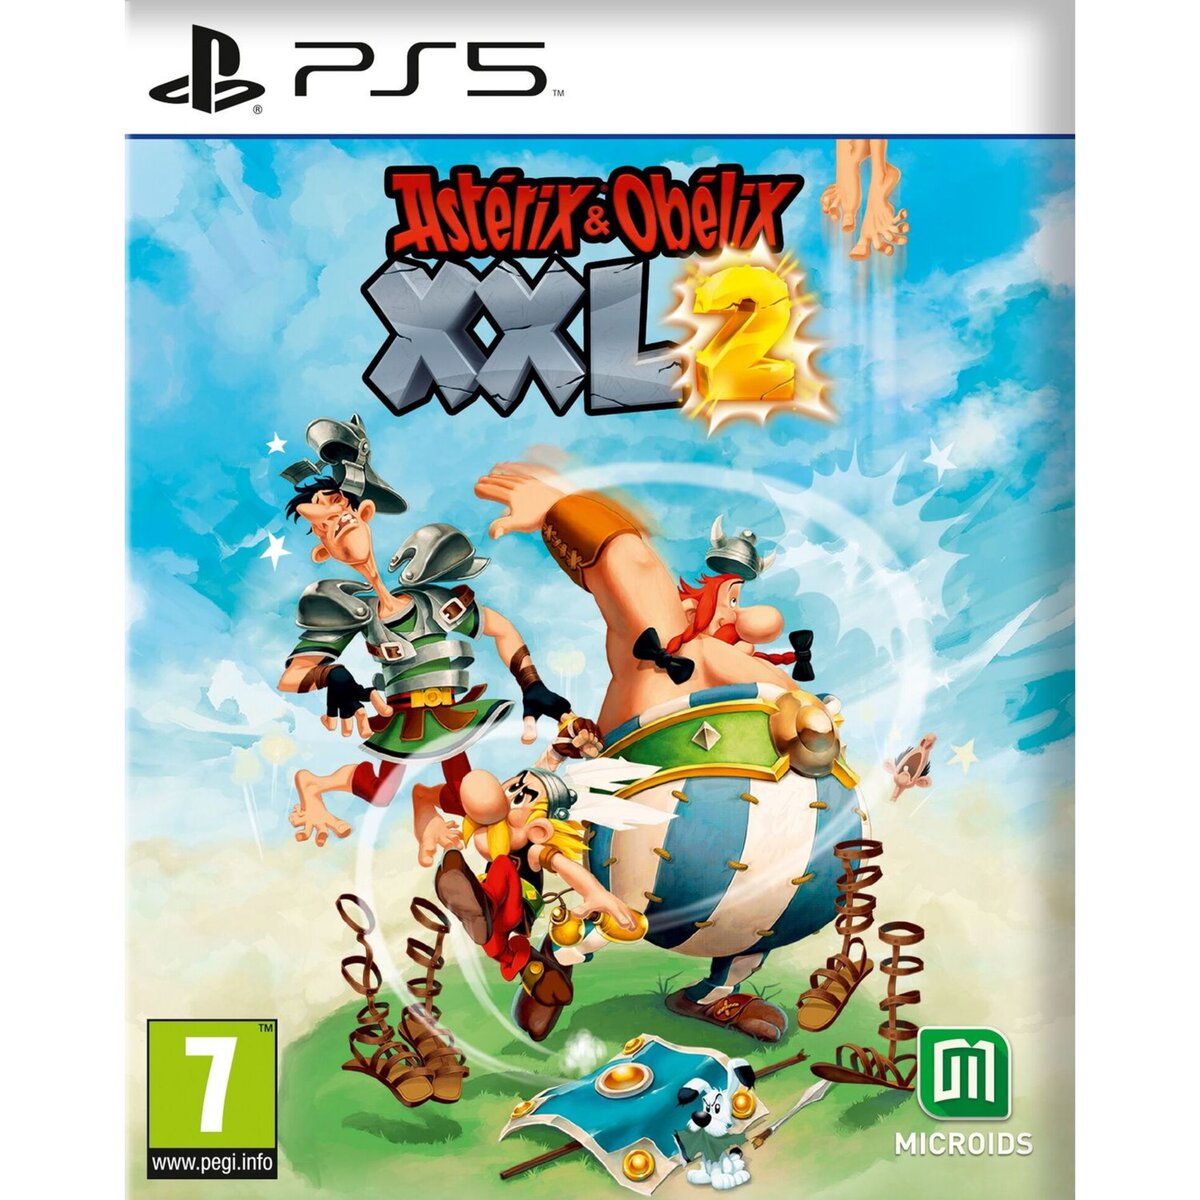 Asterix & Obelix XXL 2 PS5